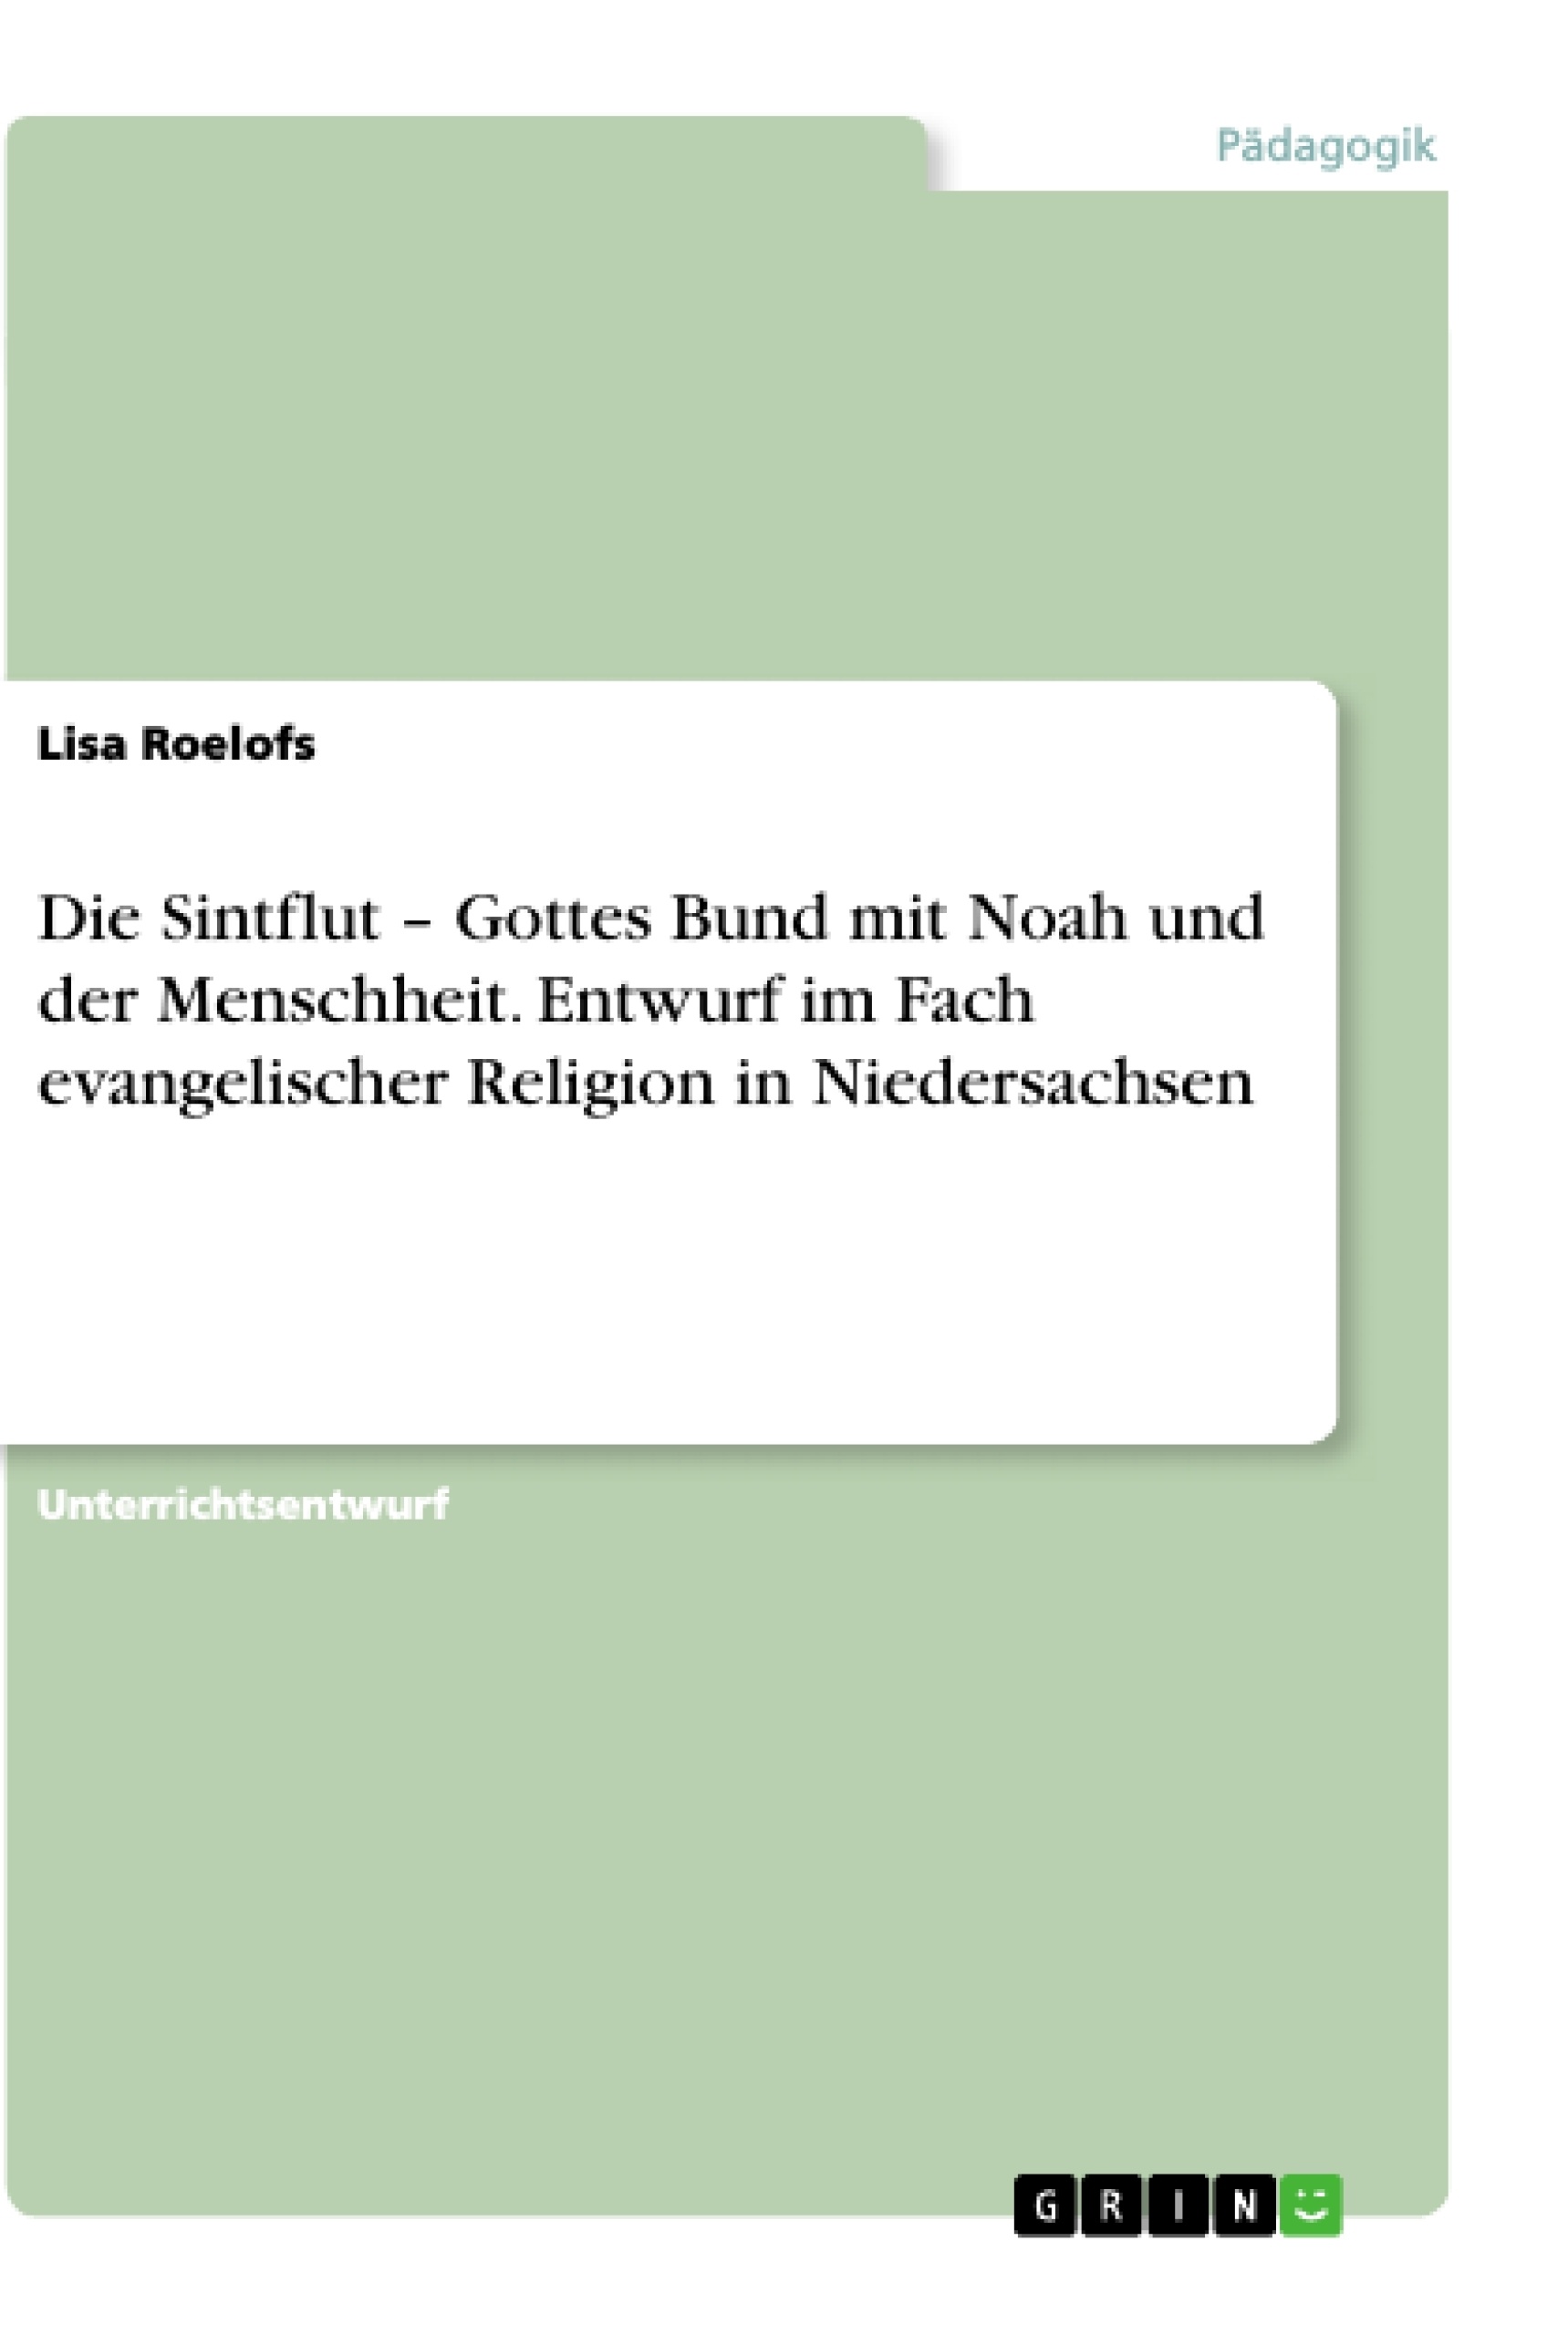 Title: Die Sintflut – Gottes Bund mit Noah und der Menschheit. Entwurf im Fach evangelischer Religion in Niedersachsen